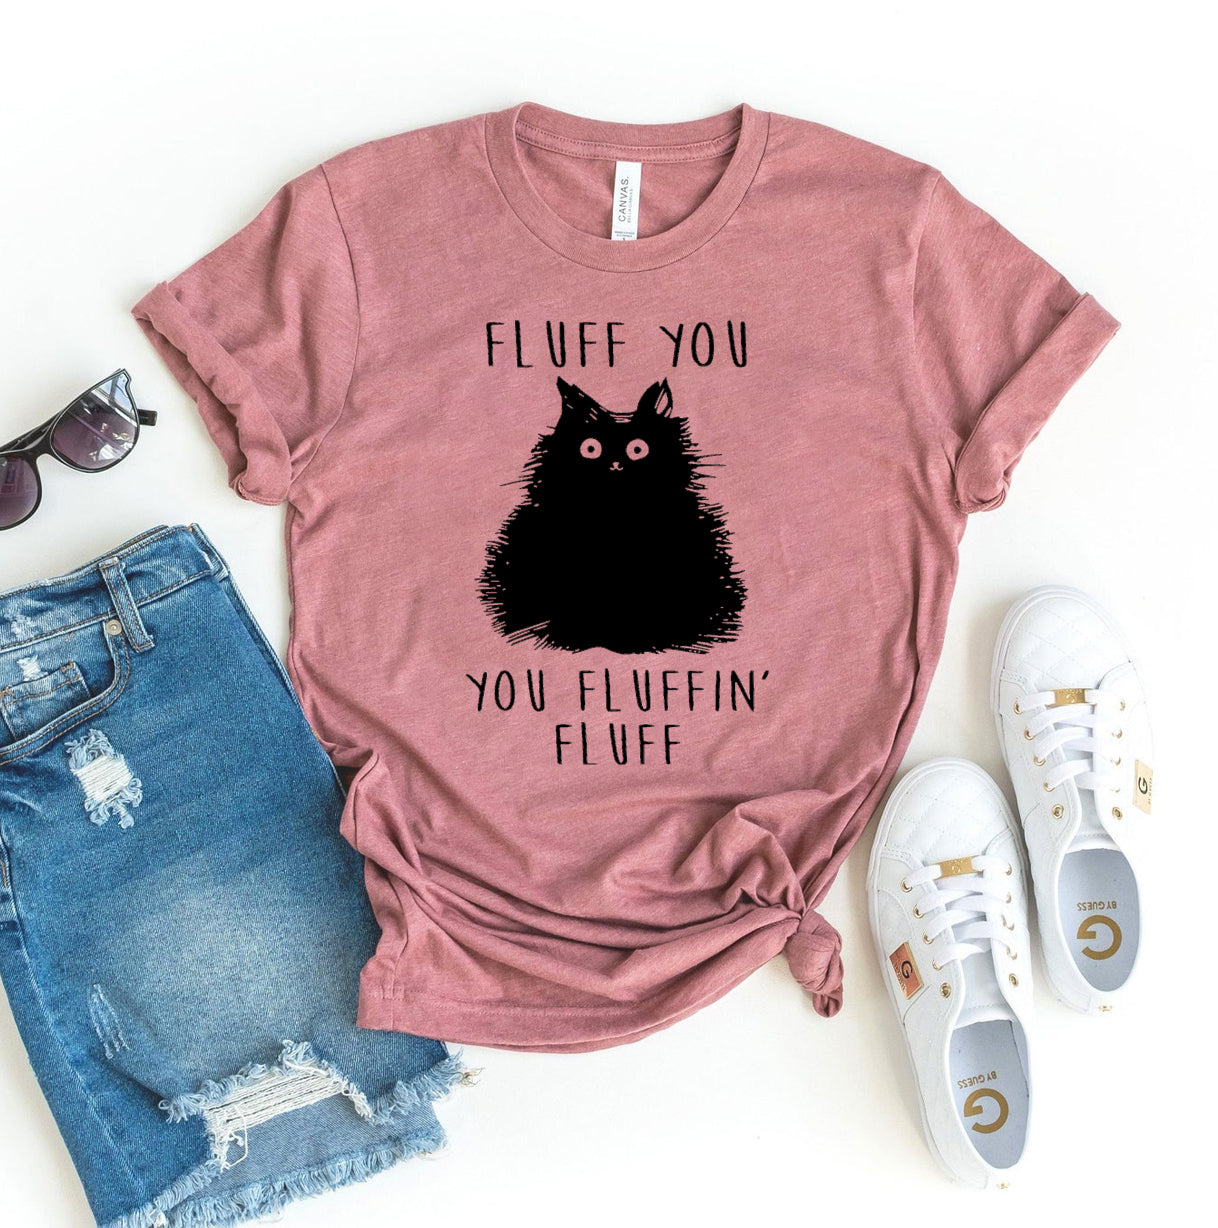 Fluff You You Fluffin Fluff T-shirt